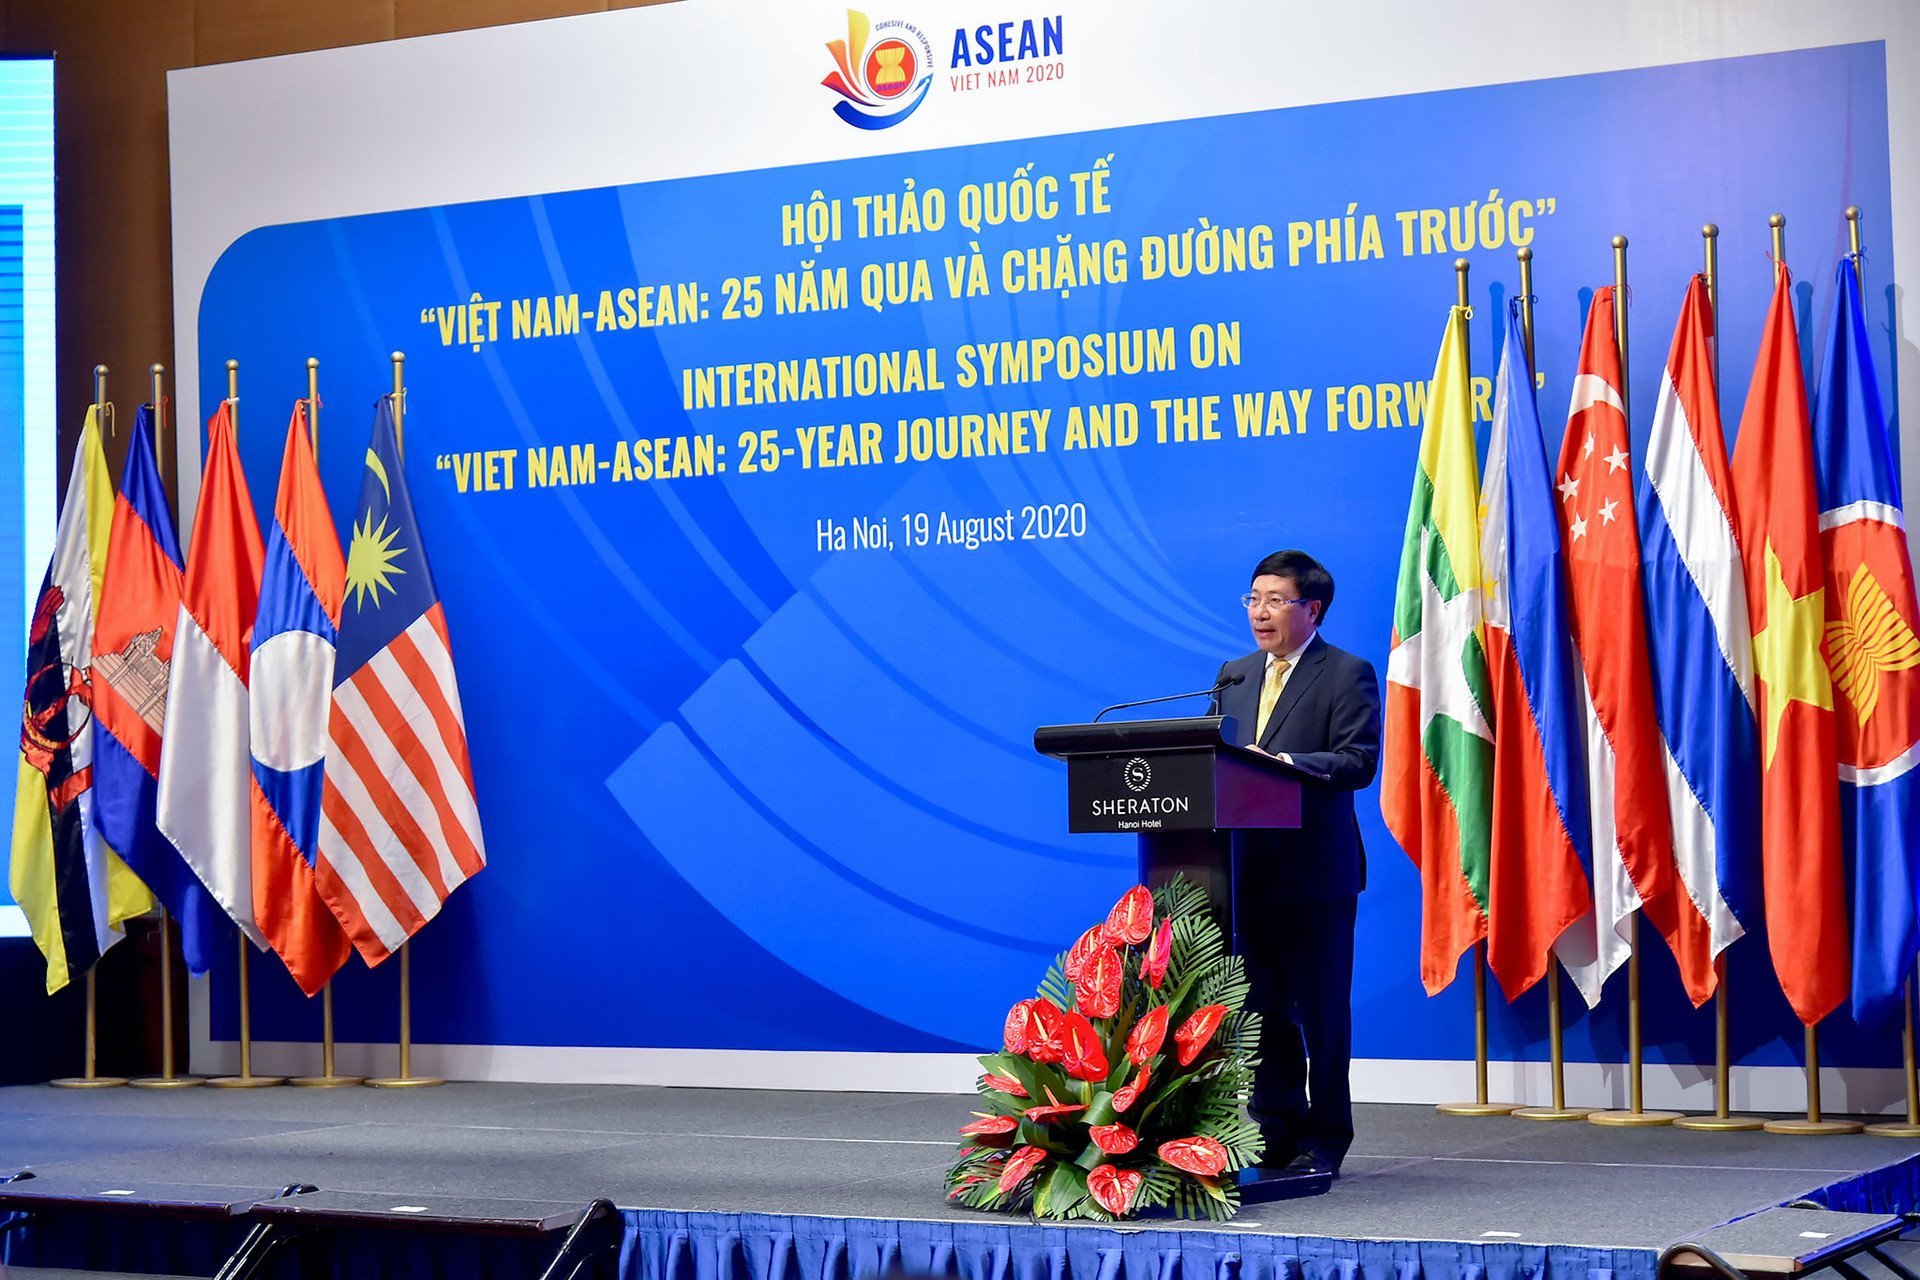 Việt Nam - ASEAN: 25 năm qua và chặng đường phía trước  - Ảnh 1.